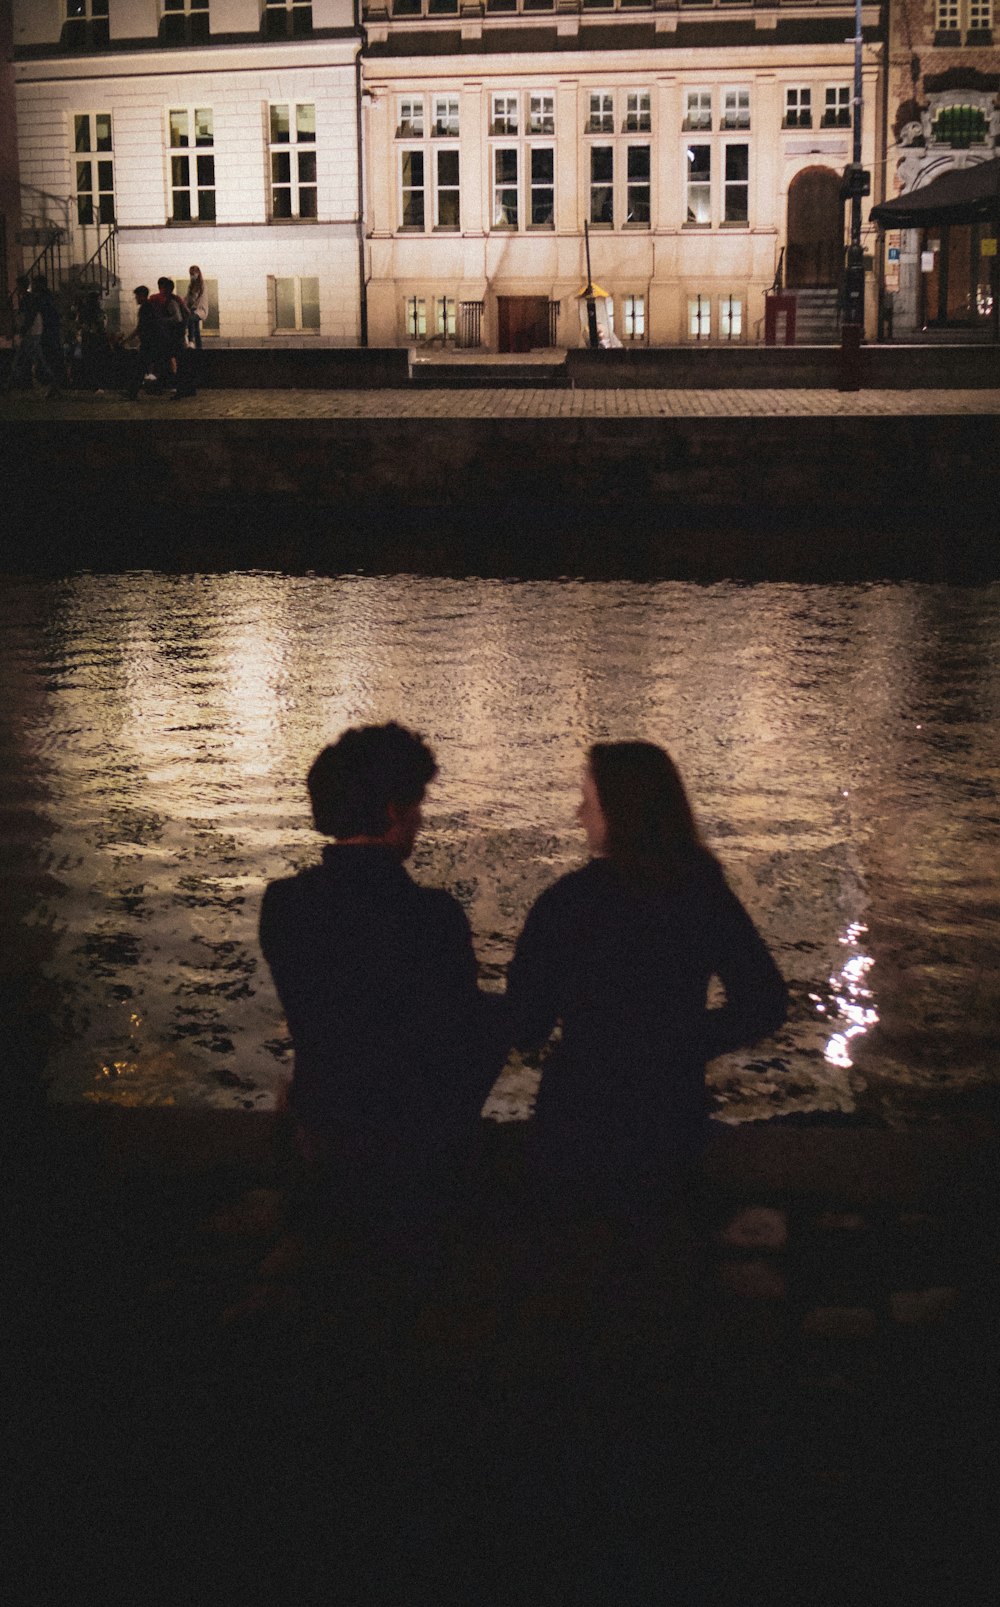 Silueta del hombre y de la mujer de pie junto al cuerpo de agua durante la noche